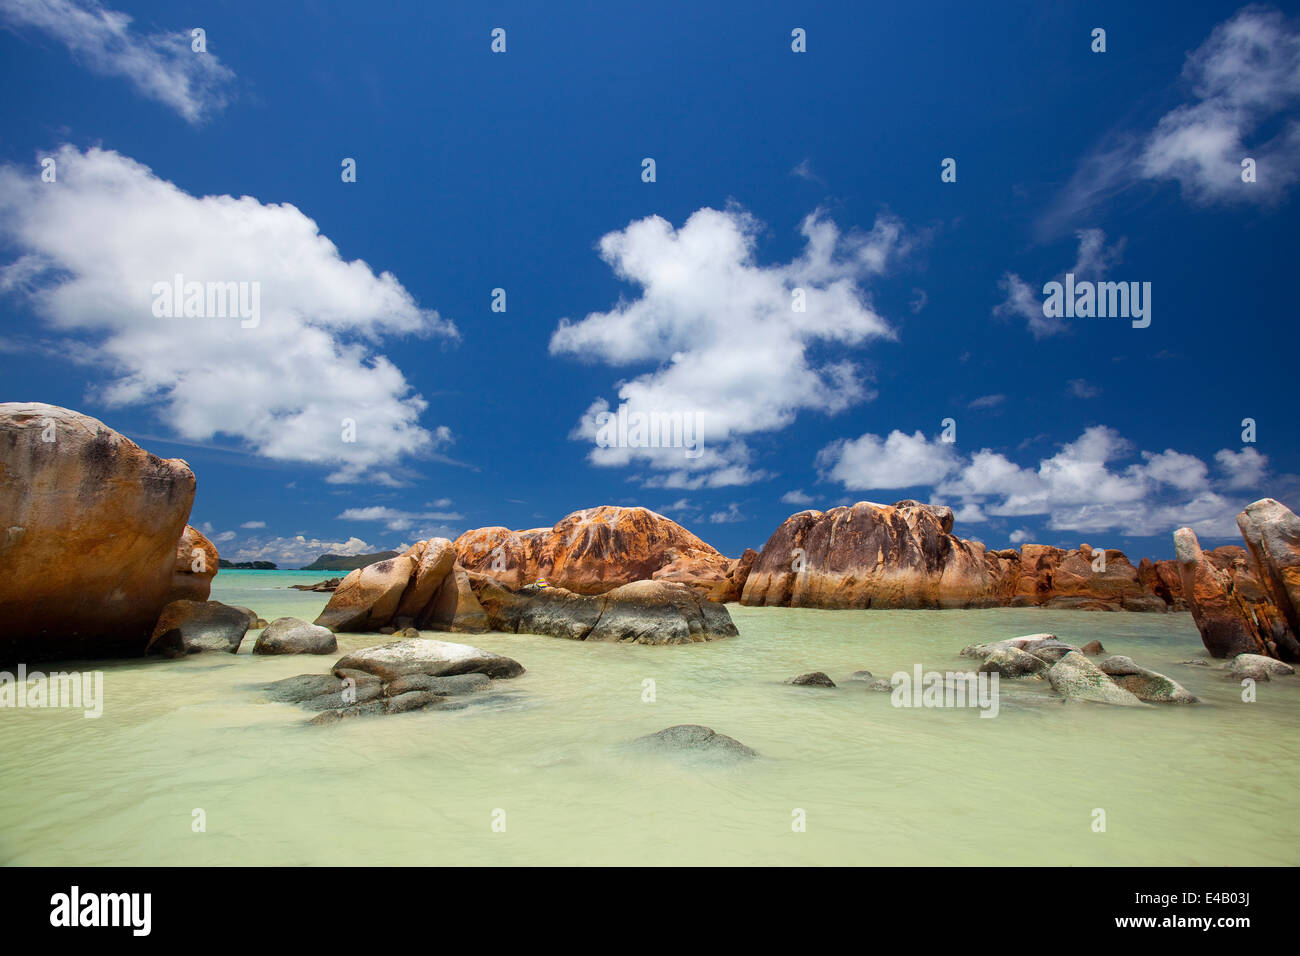 Les roches de granit dans l'eau, la plage des Seychelles Banque D'Images